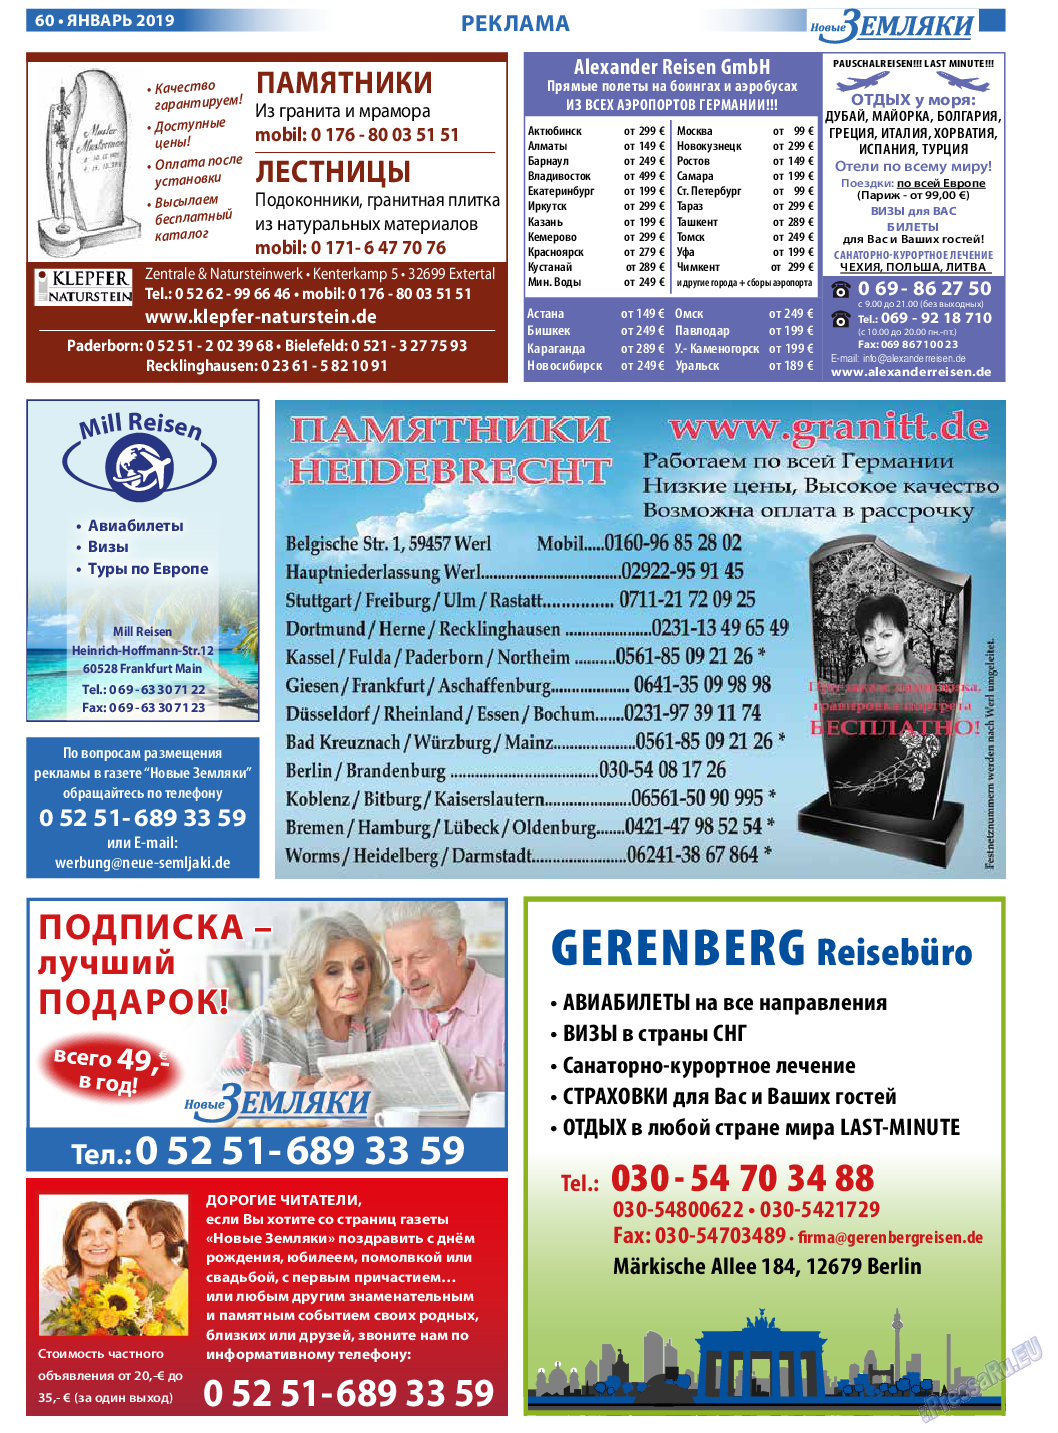 Новые Земляки, газета. 2019 №1 стр.60